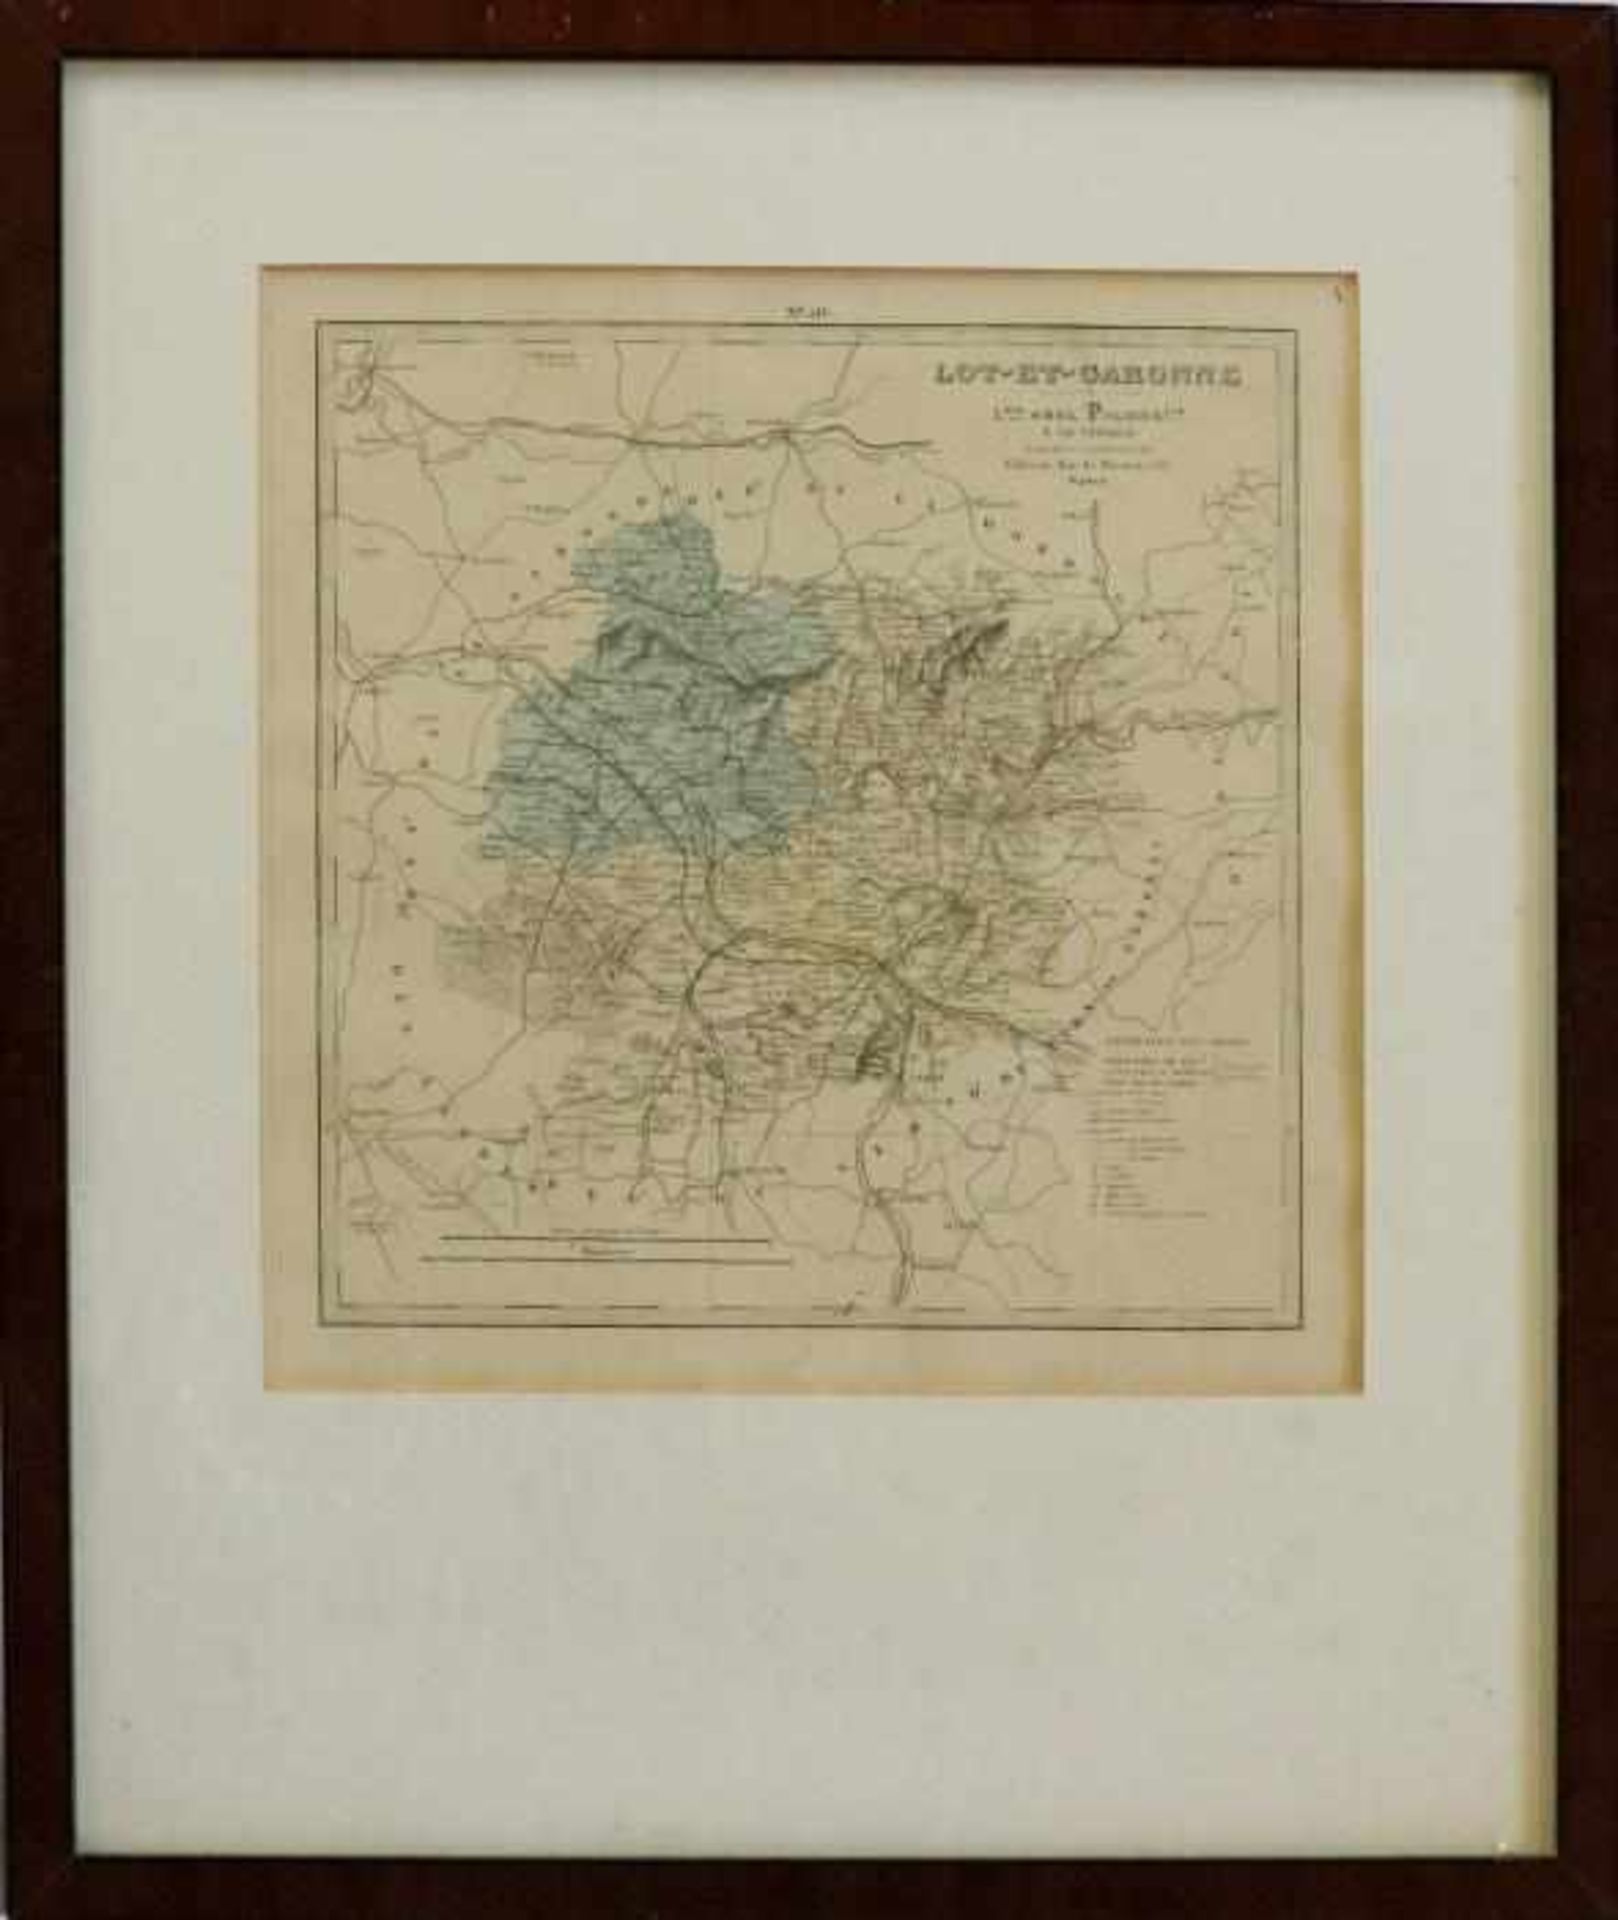 Frankreich - Département Lot-et-GaronneParis 1876, kolorierte Kupferstichkarte aus "Grand Atlas